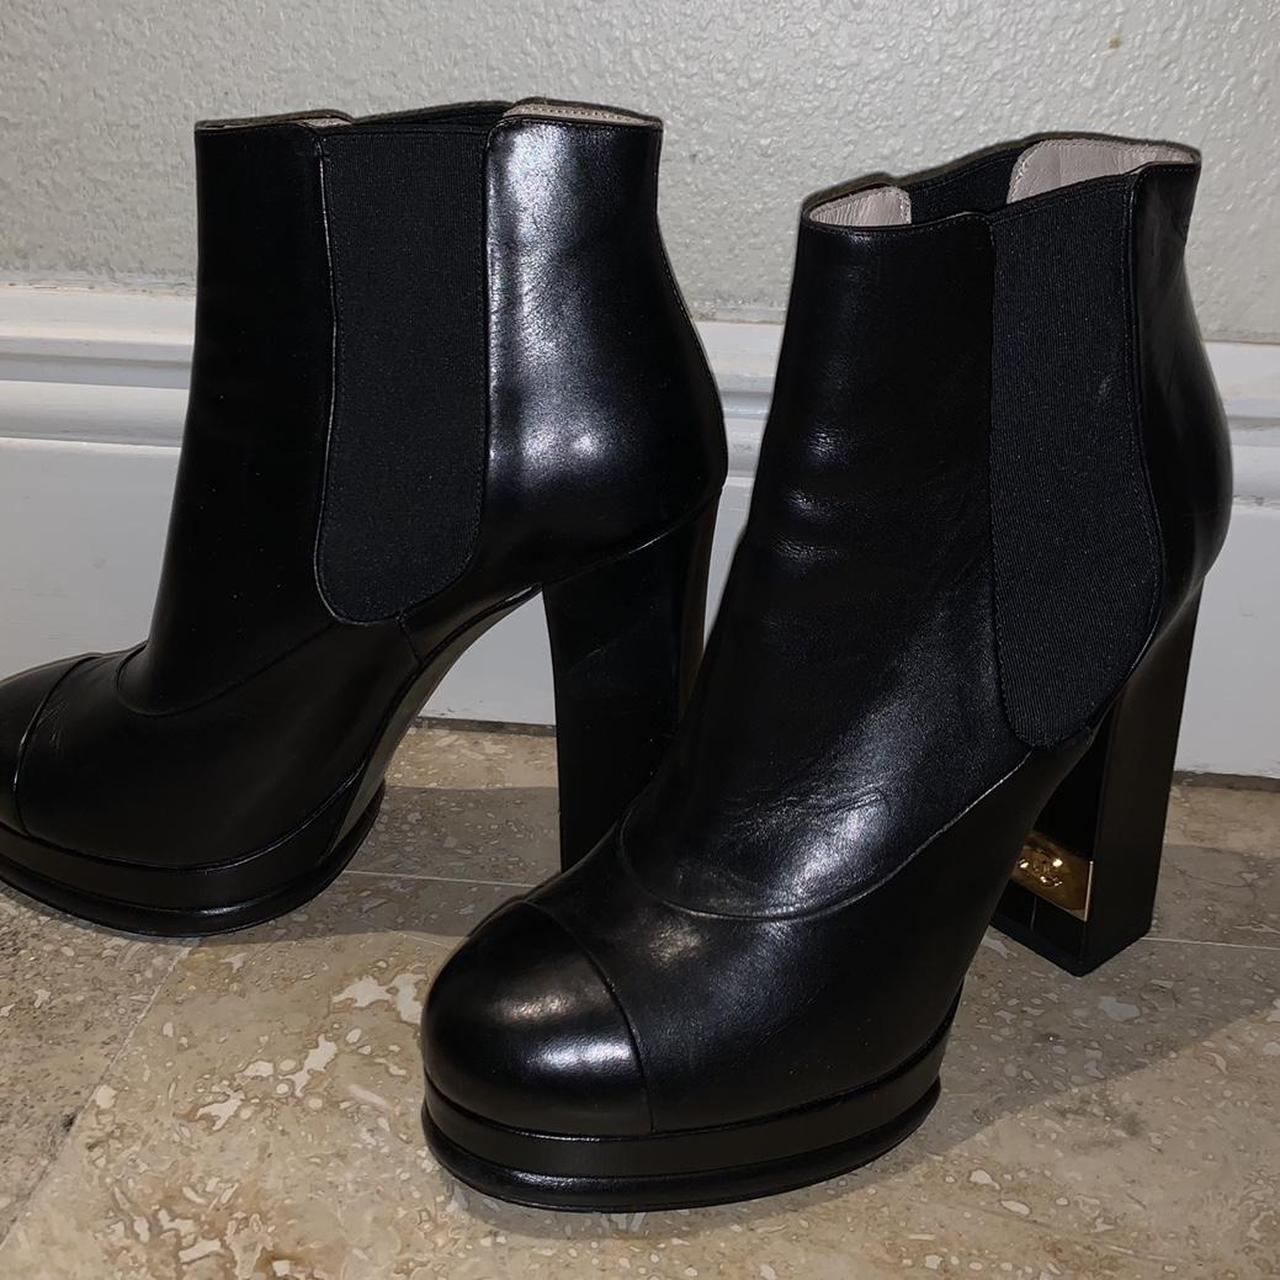 Chanel combat boots EU size 38/UK 5 Authentic - Depop